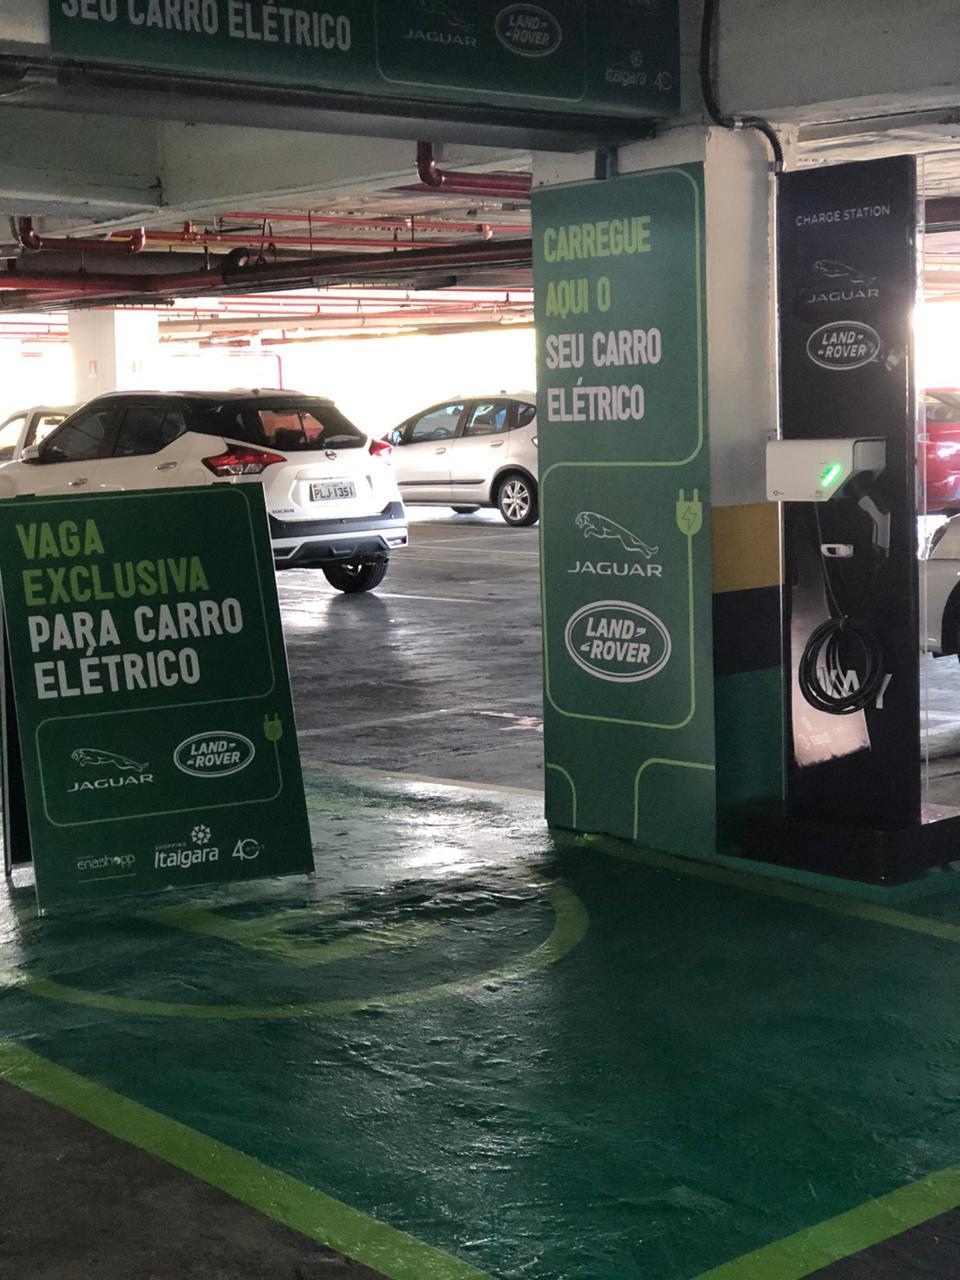 Shopping Itaigara oferece vaga para carro elétrico